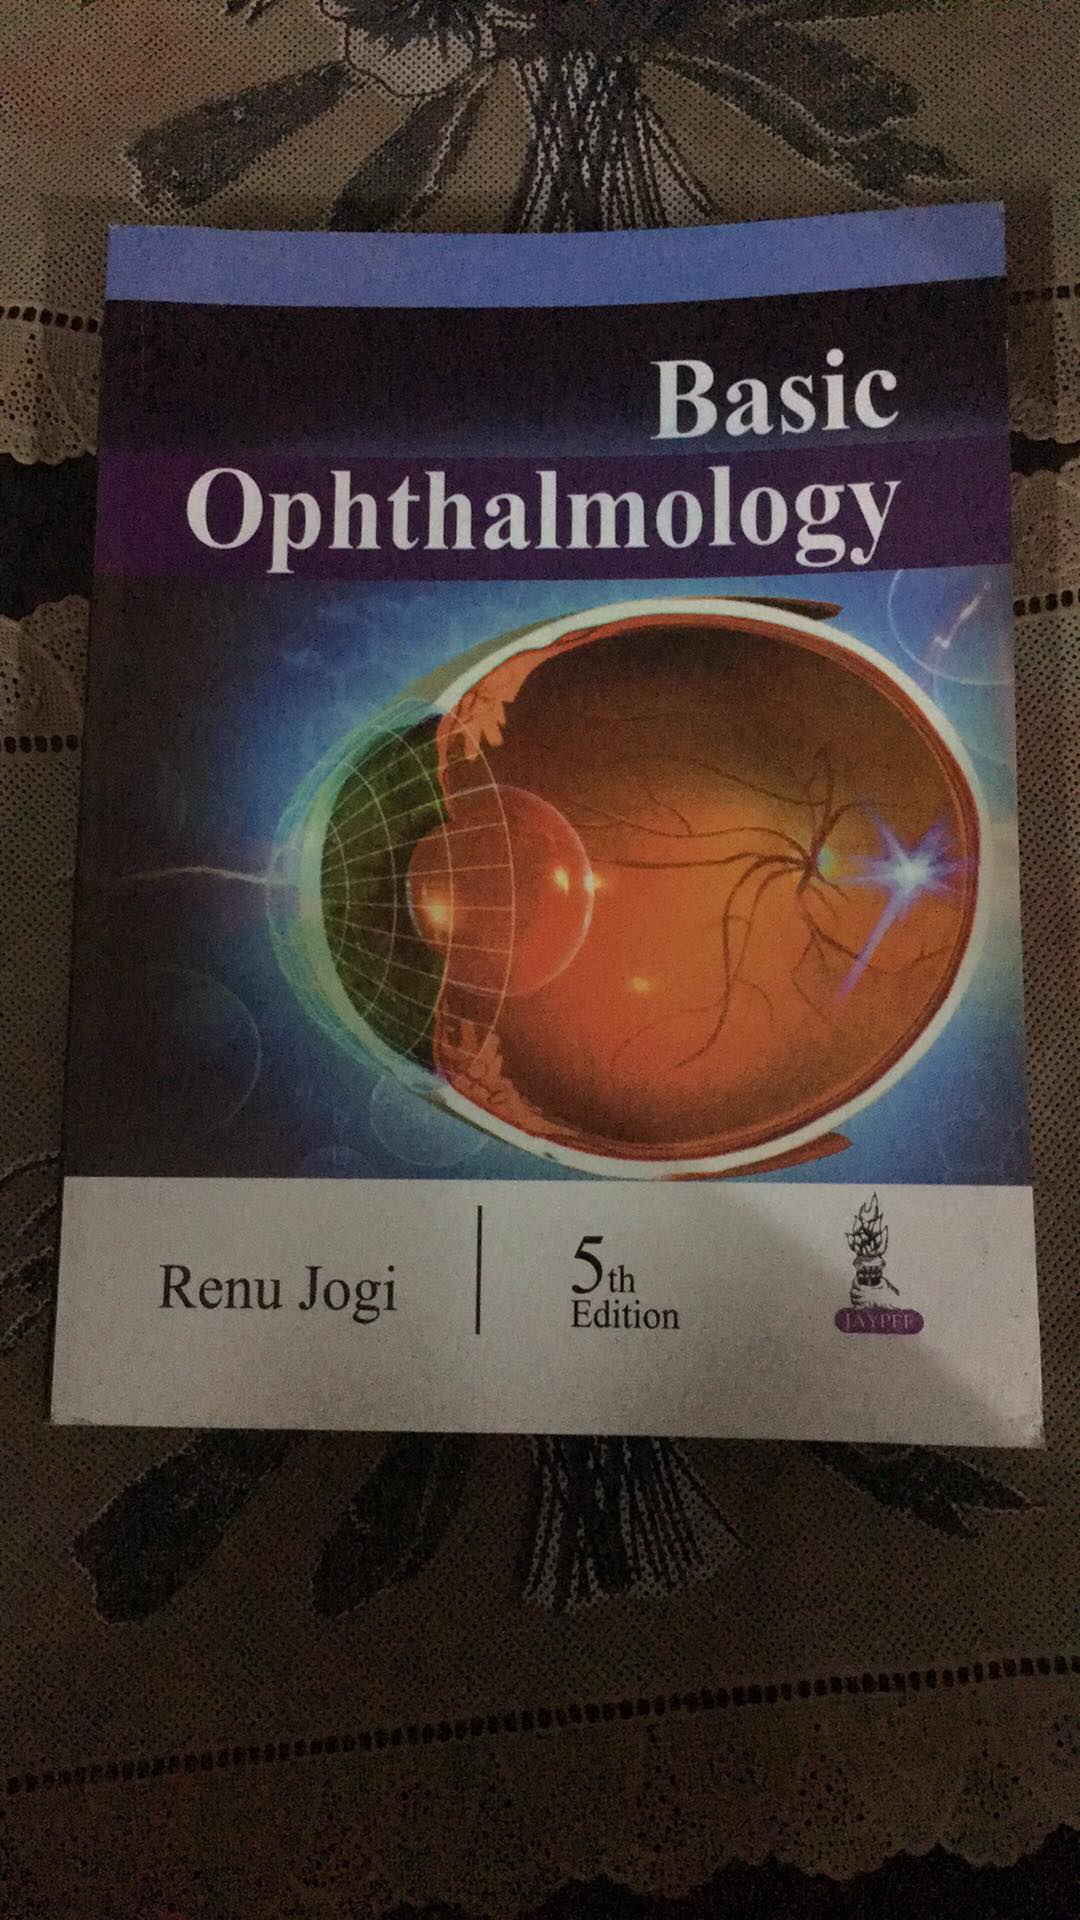 Basic Ophthalmology
